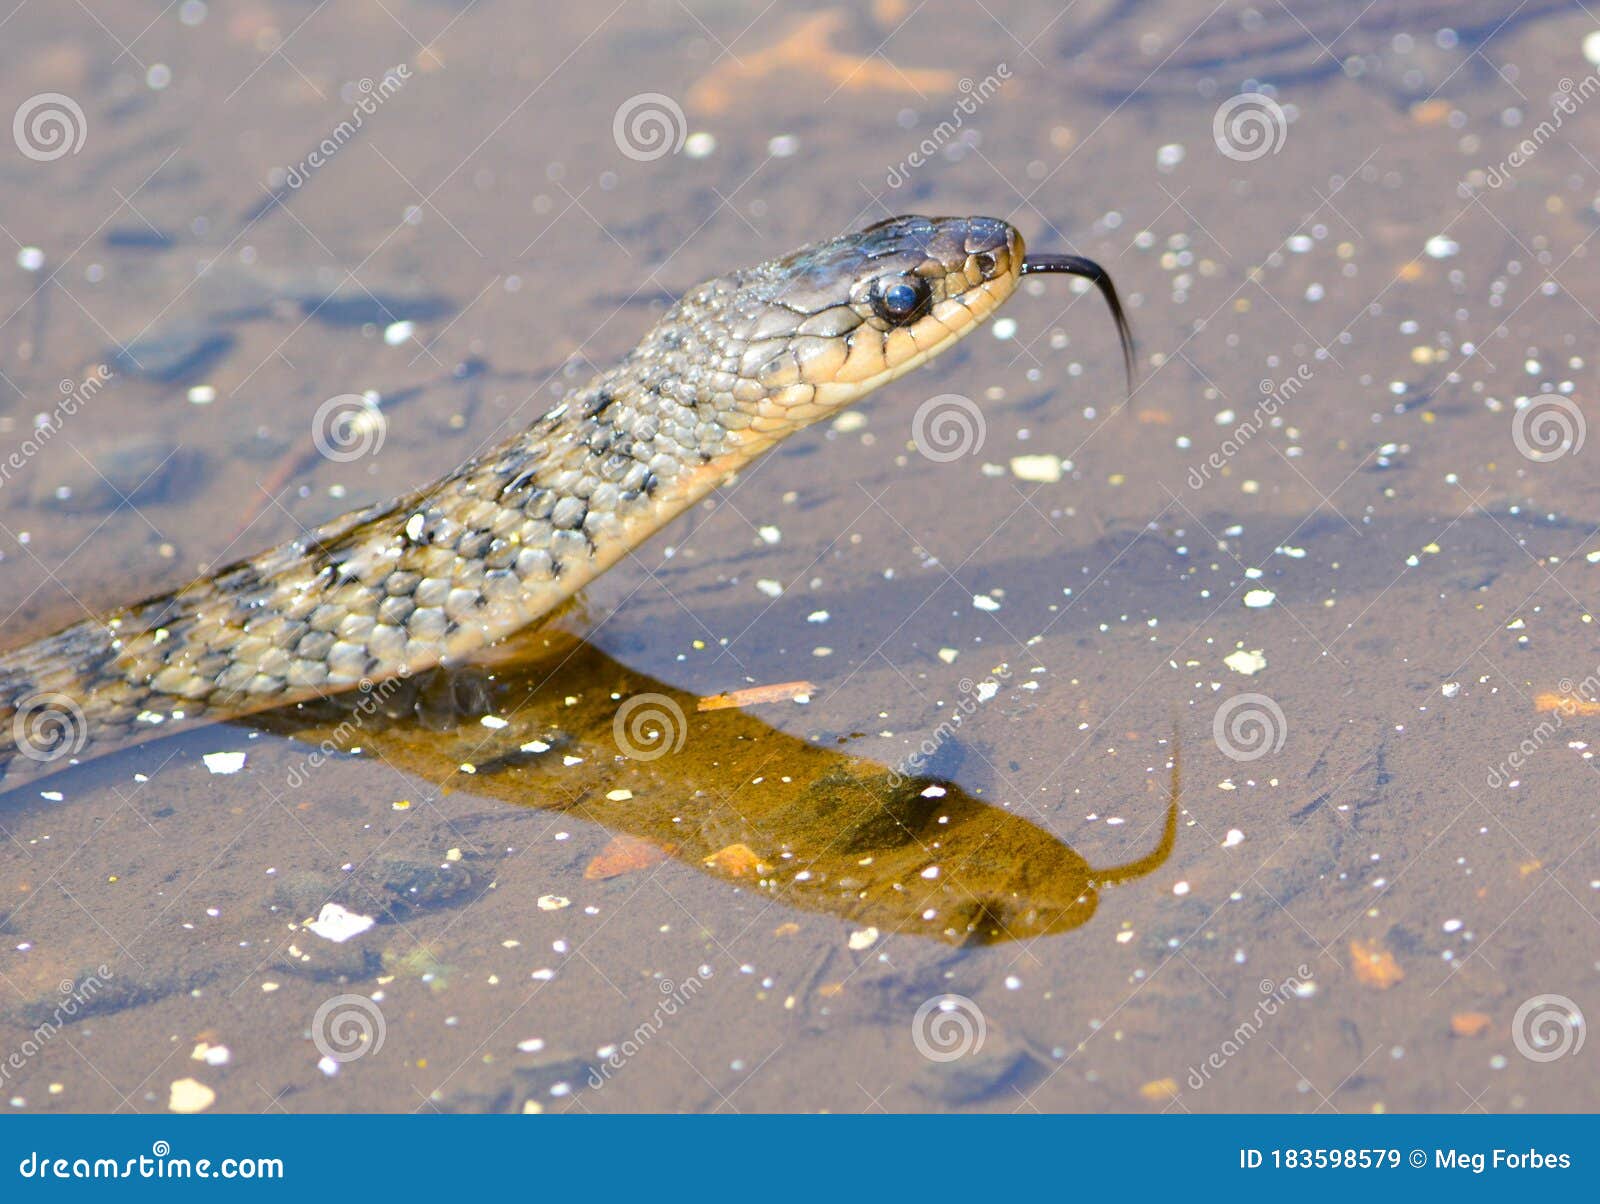 stil Senatet finansiel A Keelback Venomous Snake in Queensland, Australia Stock Image - Image of  icon, danger: 183598579